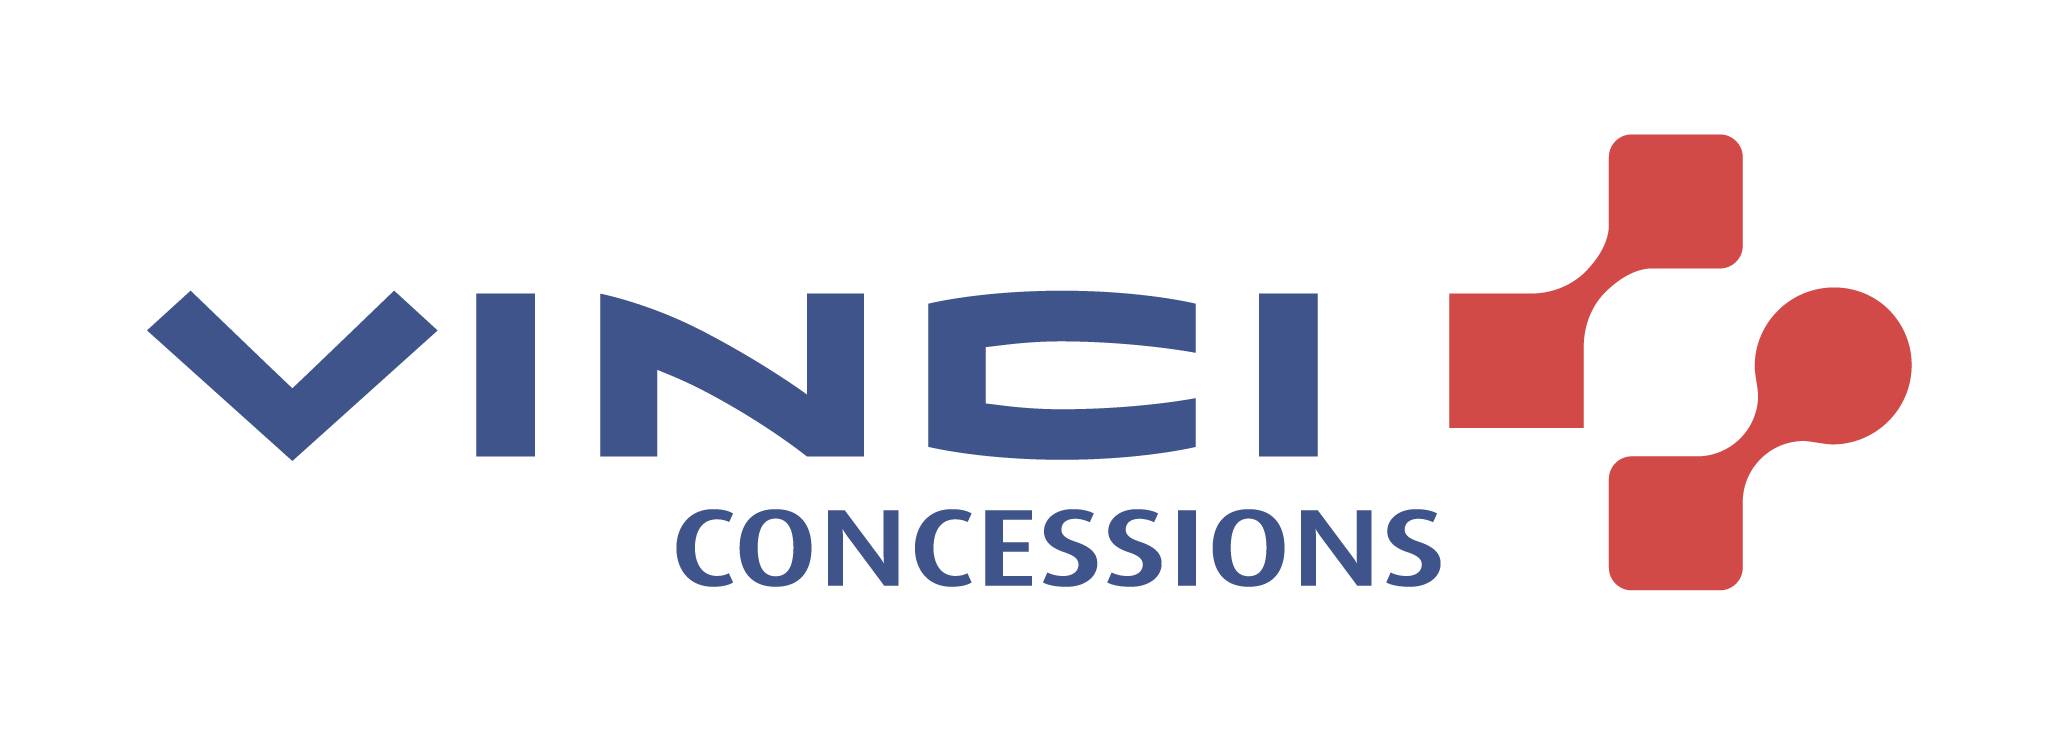 Vinci Concessions_logo